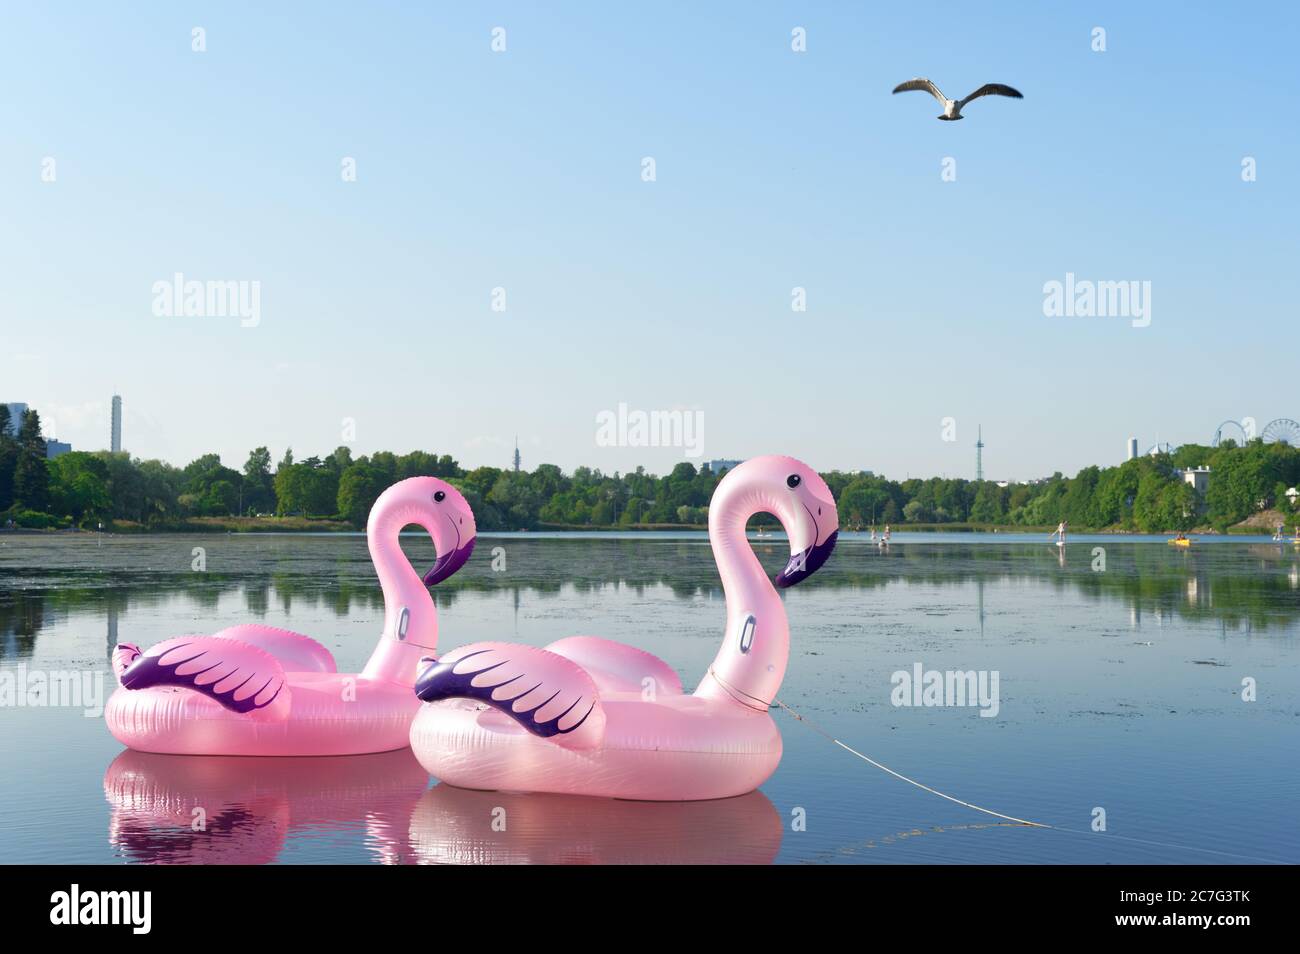 Pinkfarbener aufblasbarer Spielzeug-Flamingo auf dem See im Zentrum von Helsinki, Finnland Stockfoto